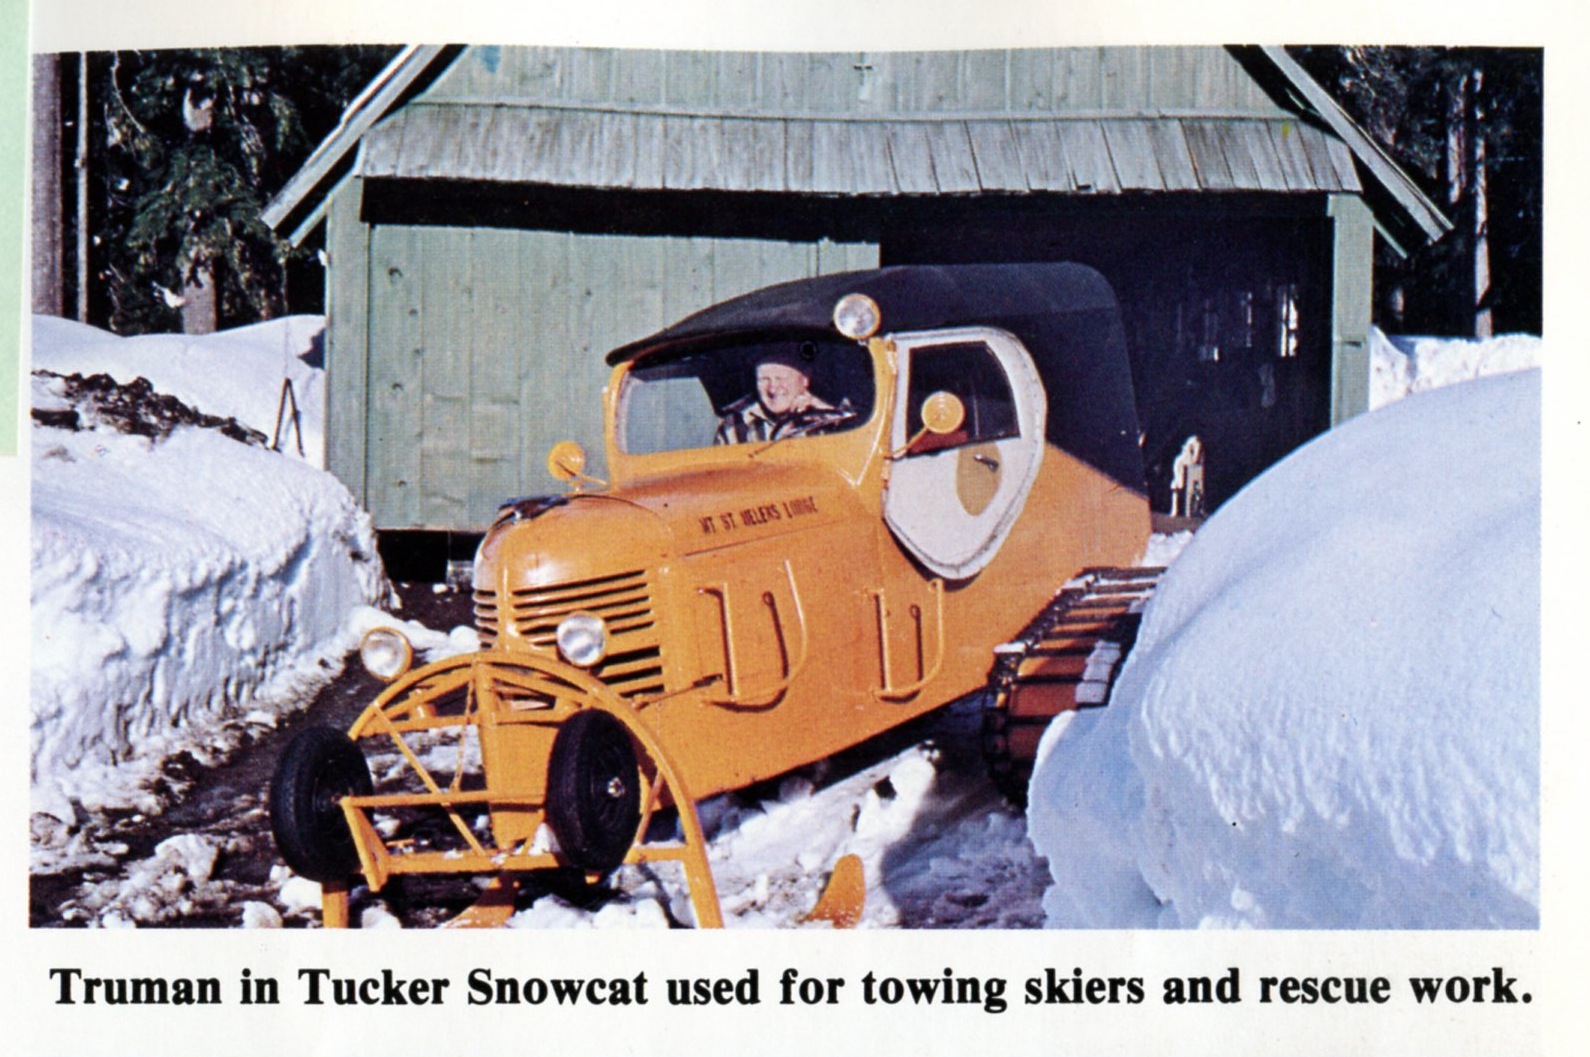 Harry Truman in Cat ski.jpg